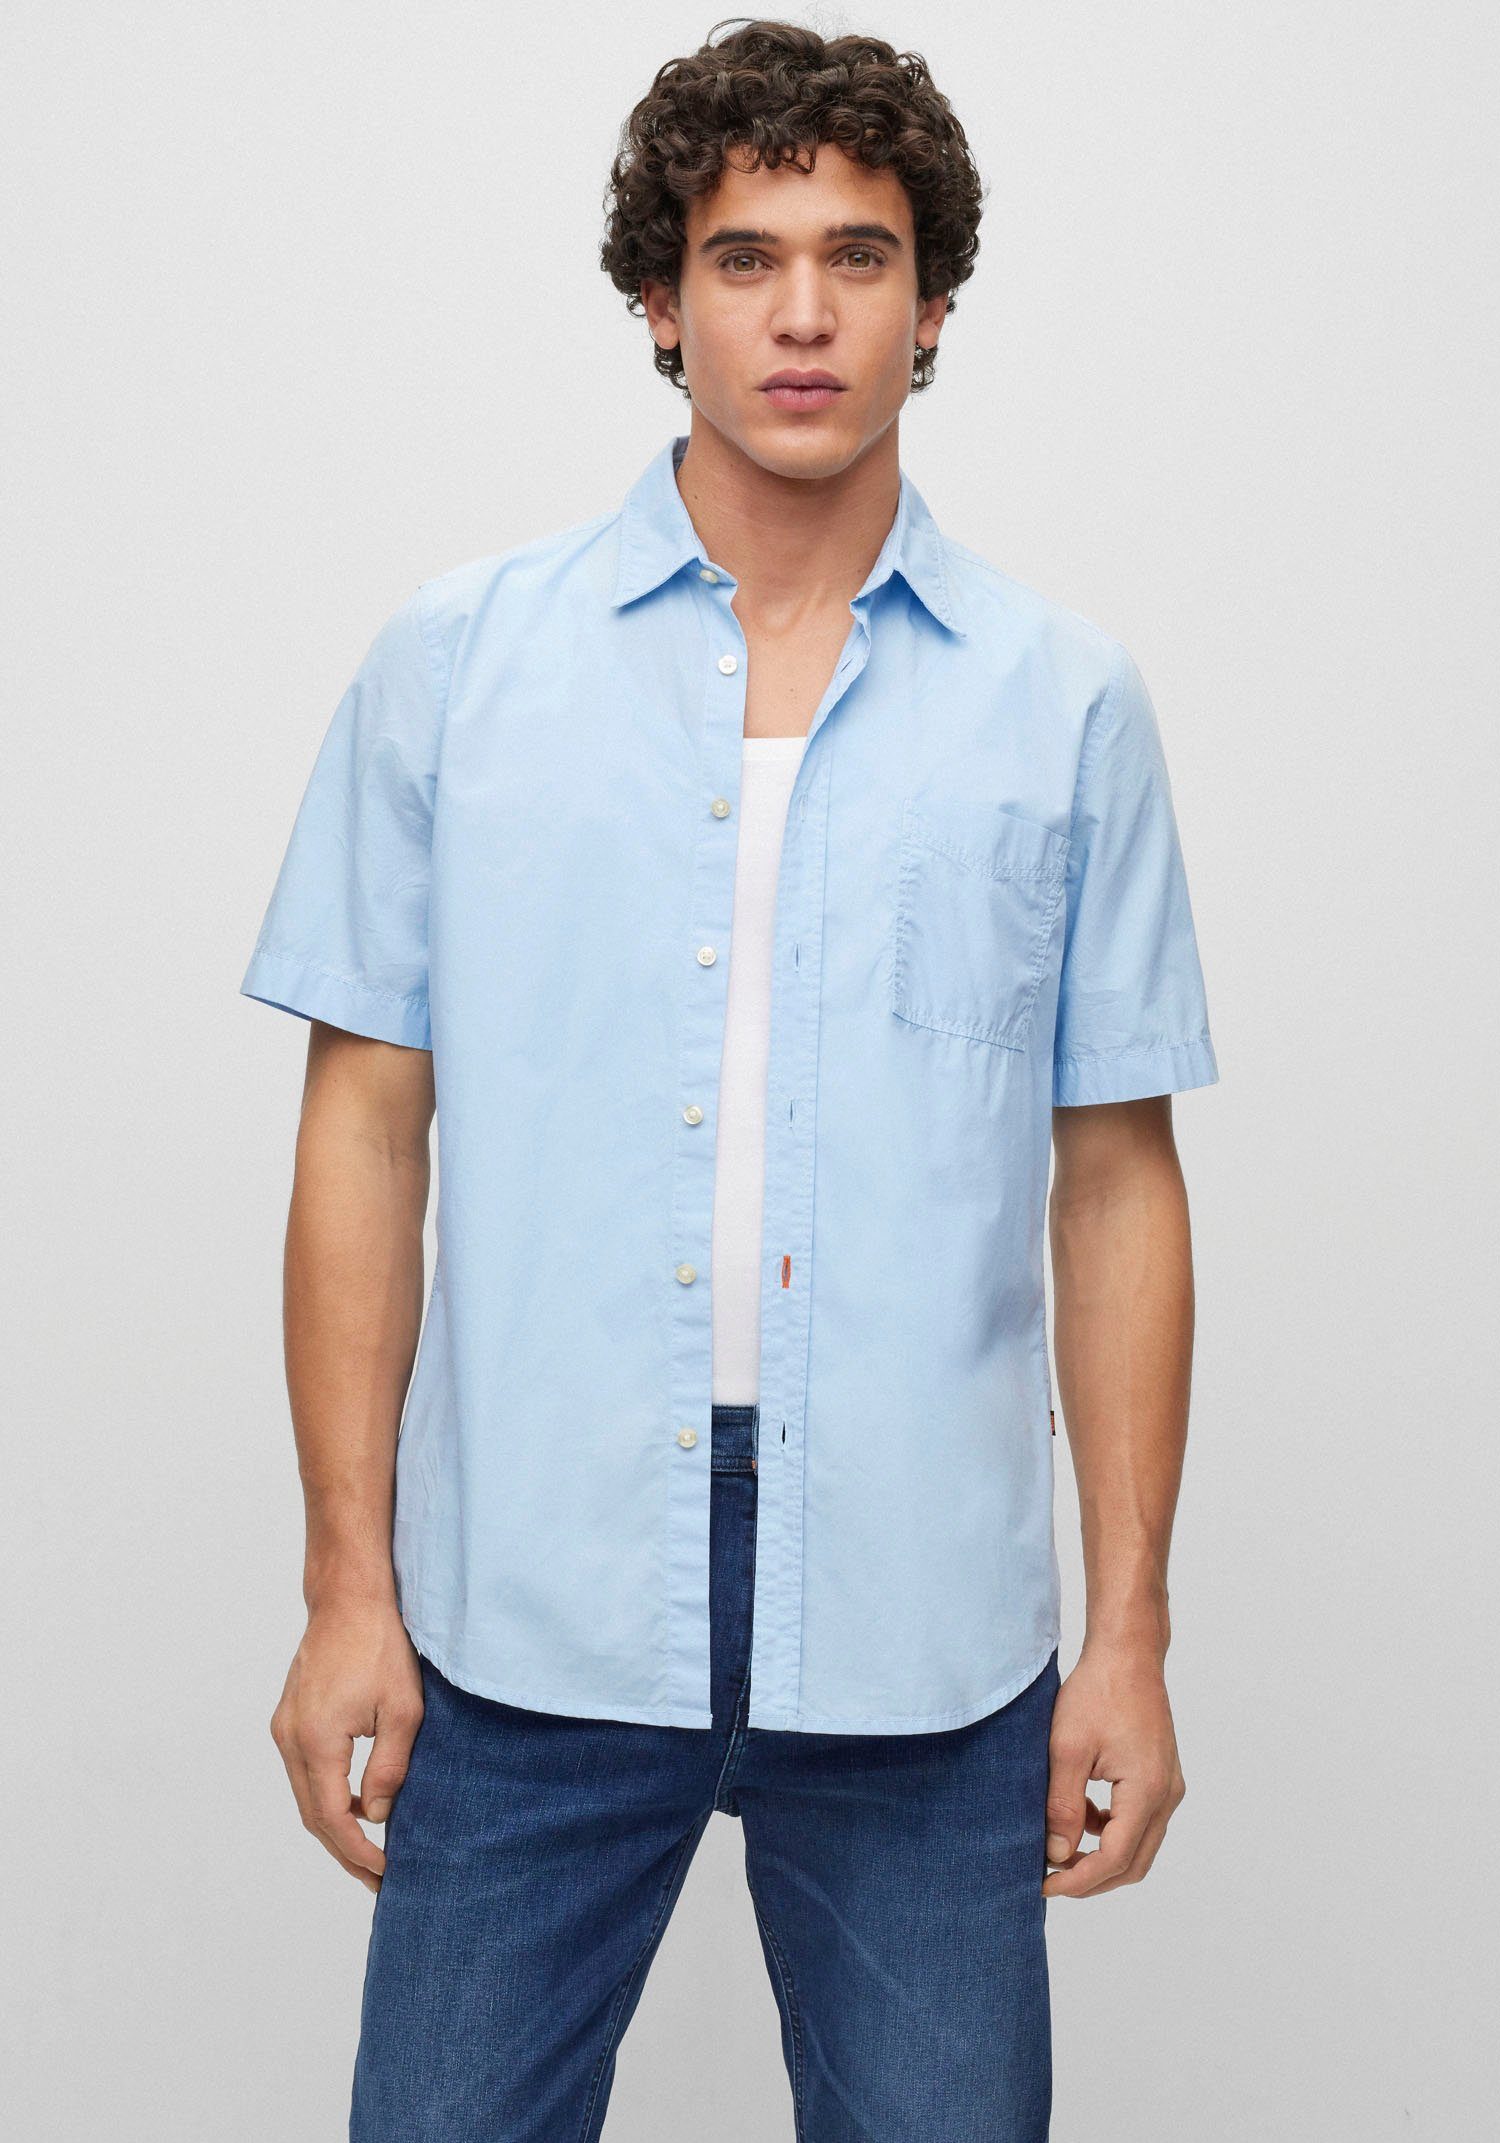 Hugo Boss Hemden für Herren online kaufen | OTTO